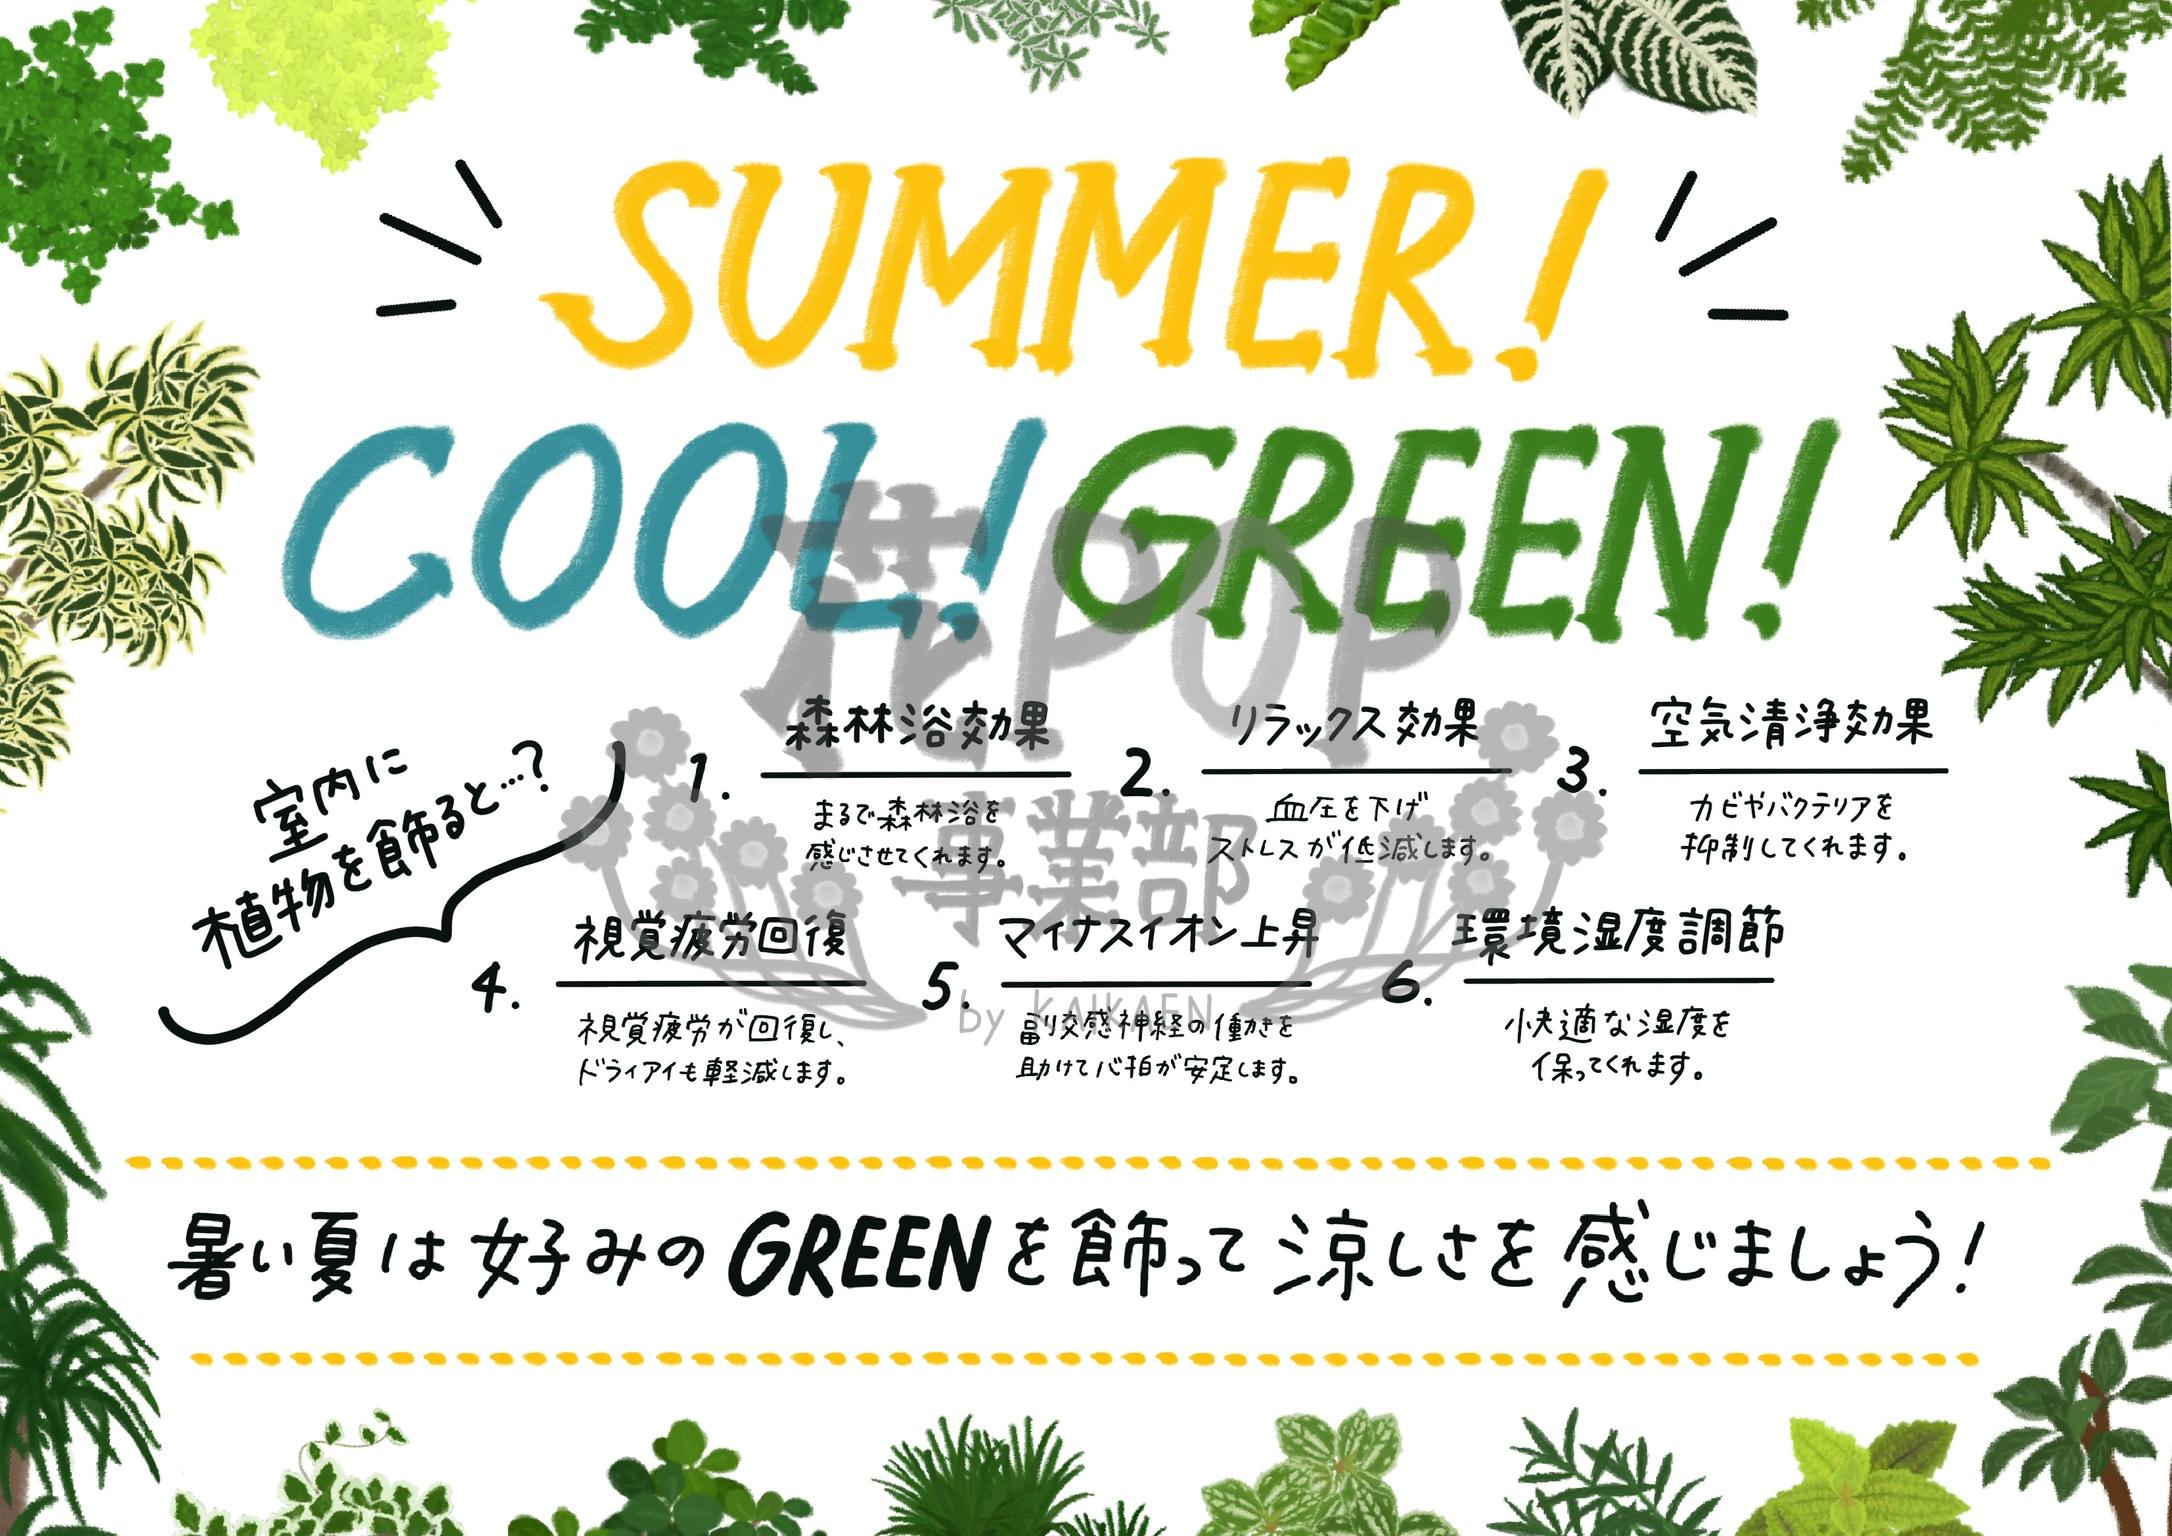 SUMMER! COOL! GREEN!